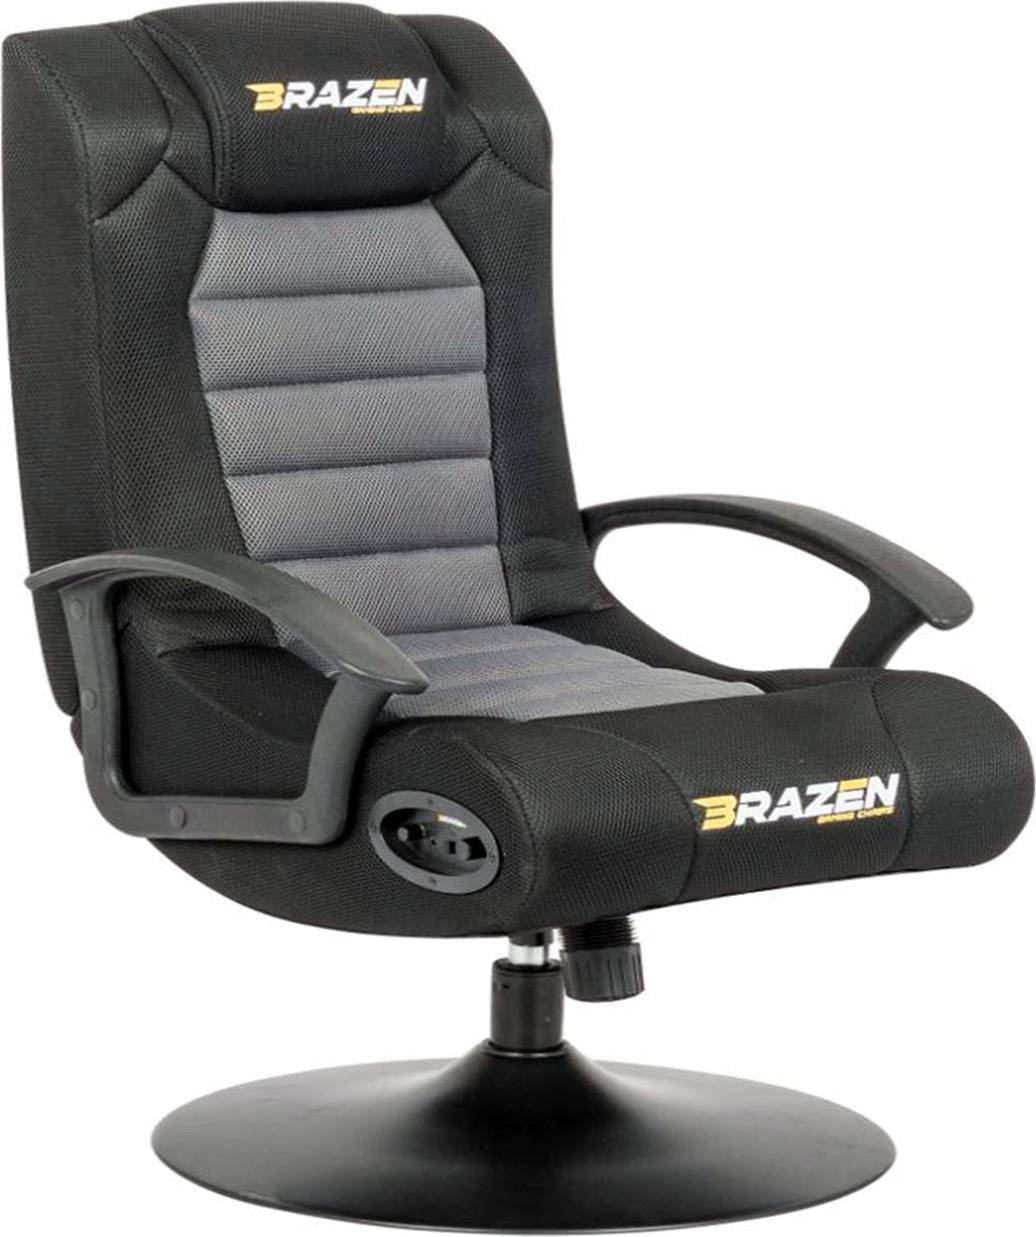 1 size BraZen Serpent 2.1 Bluetooth Surround Sound Gaming Chair Grey/Black/Red 